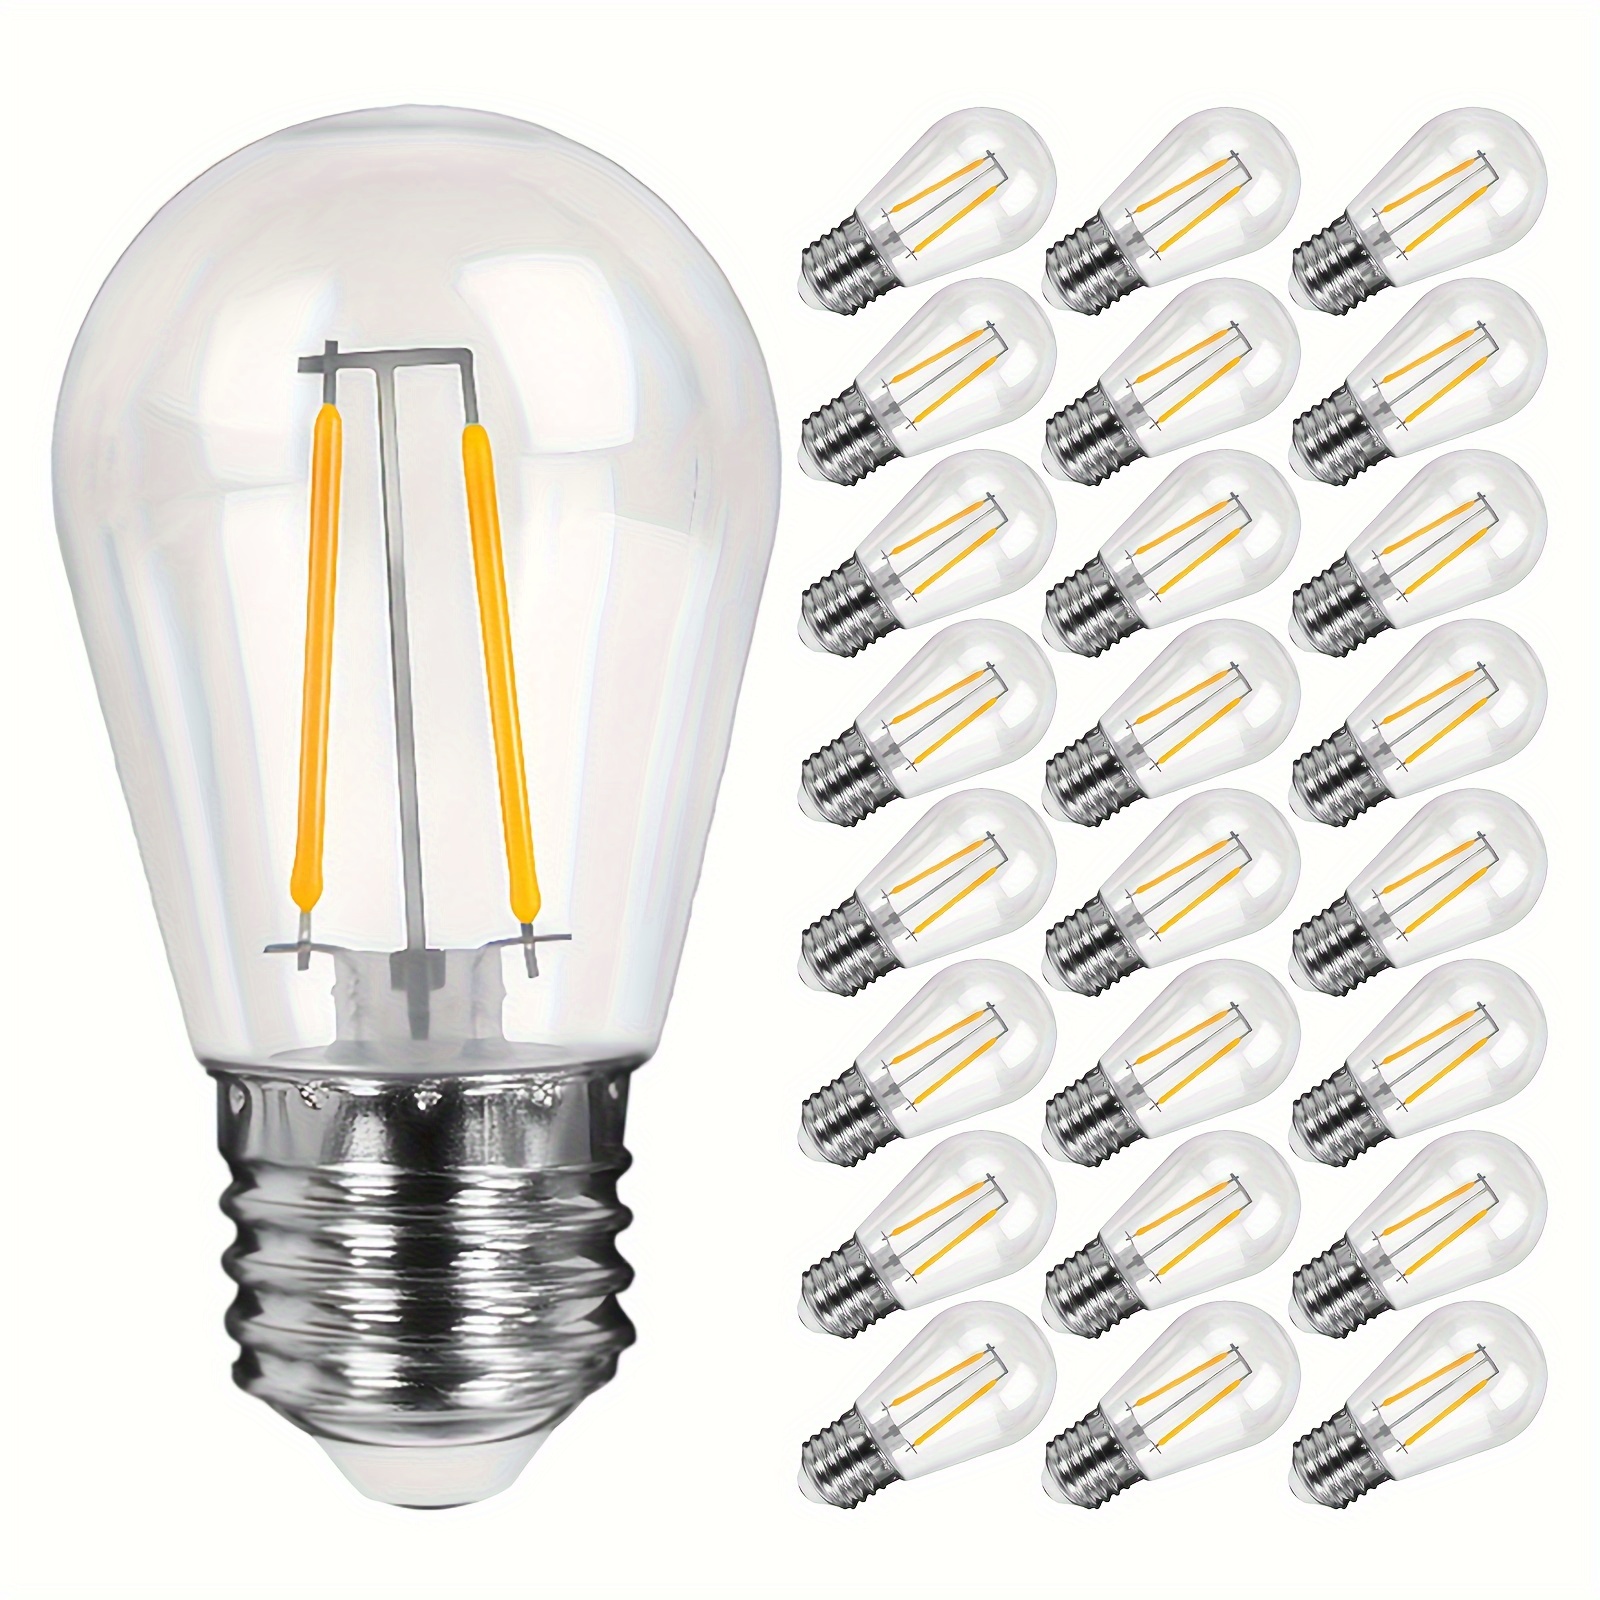 Ampoules LED vintage, verre en couleur E27- 2W - Pack de 4